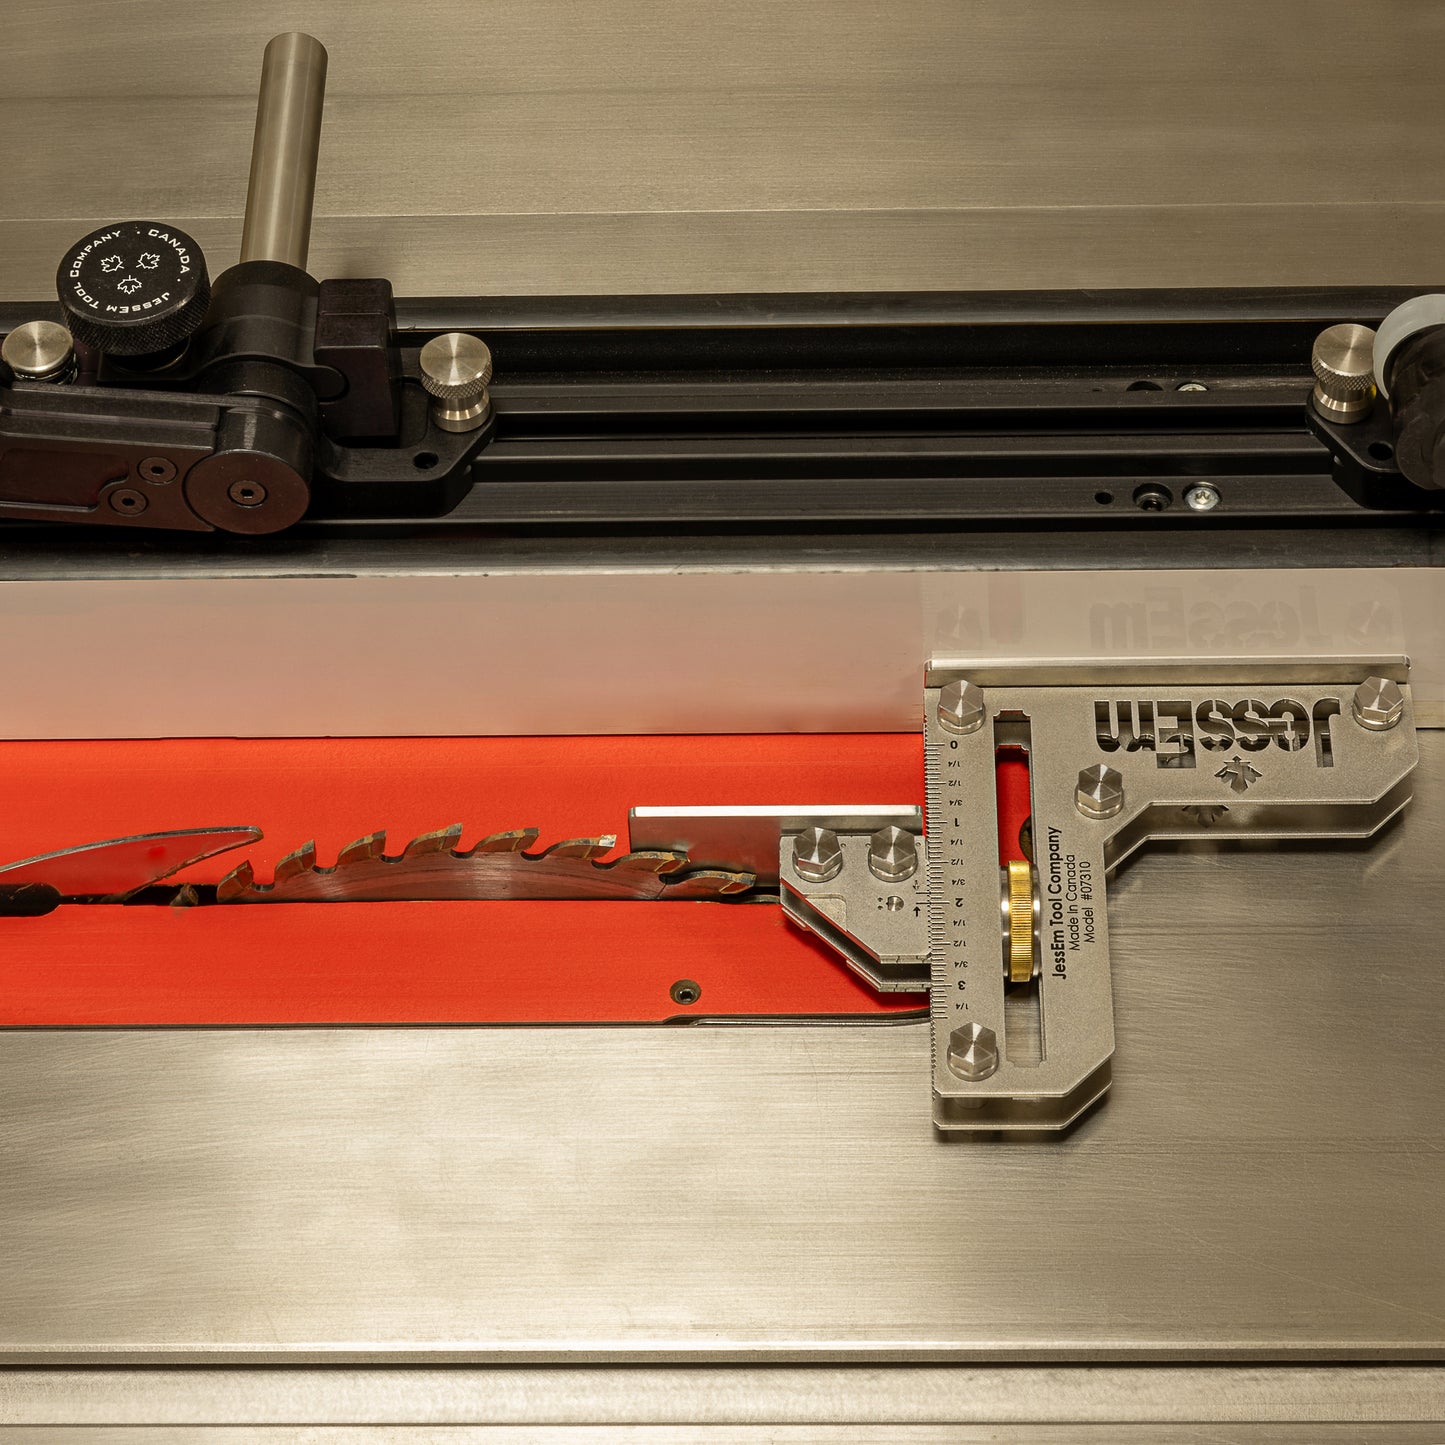 Jauge de réglage d'outils en acier inoxydable - Impérial et métrique